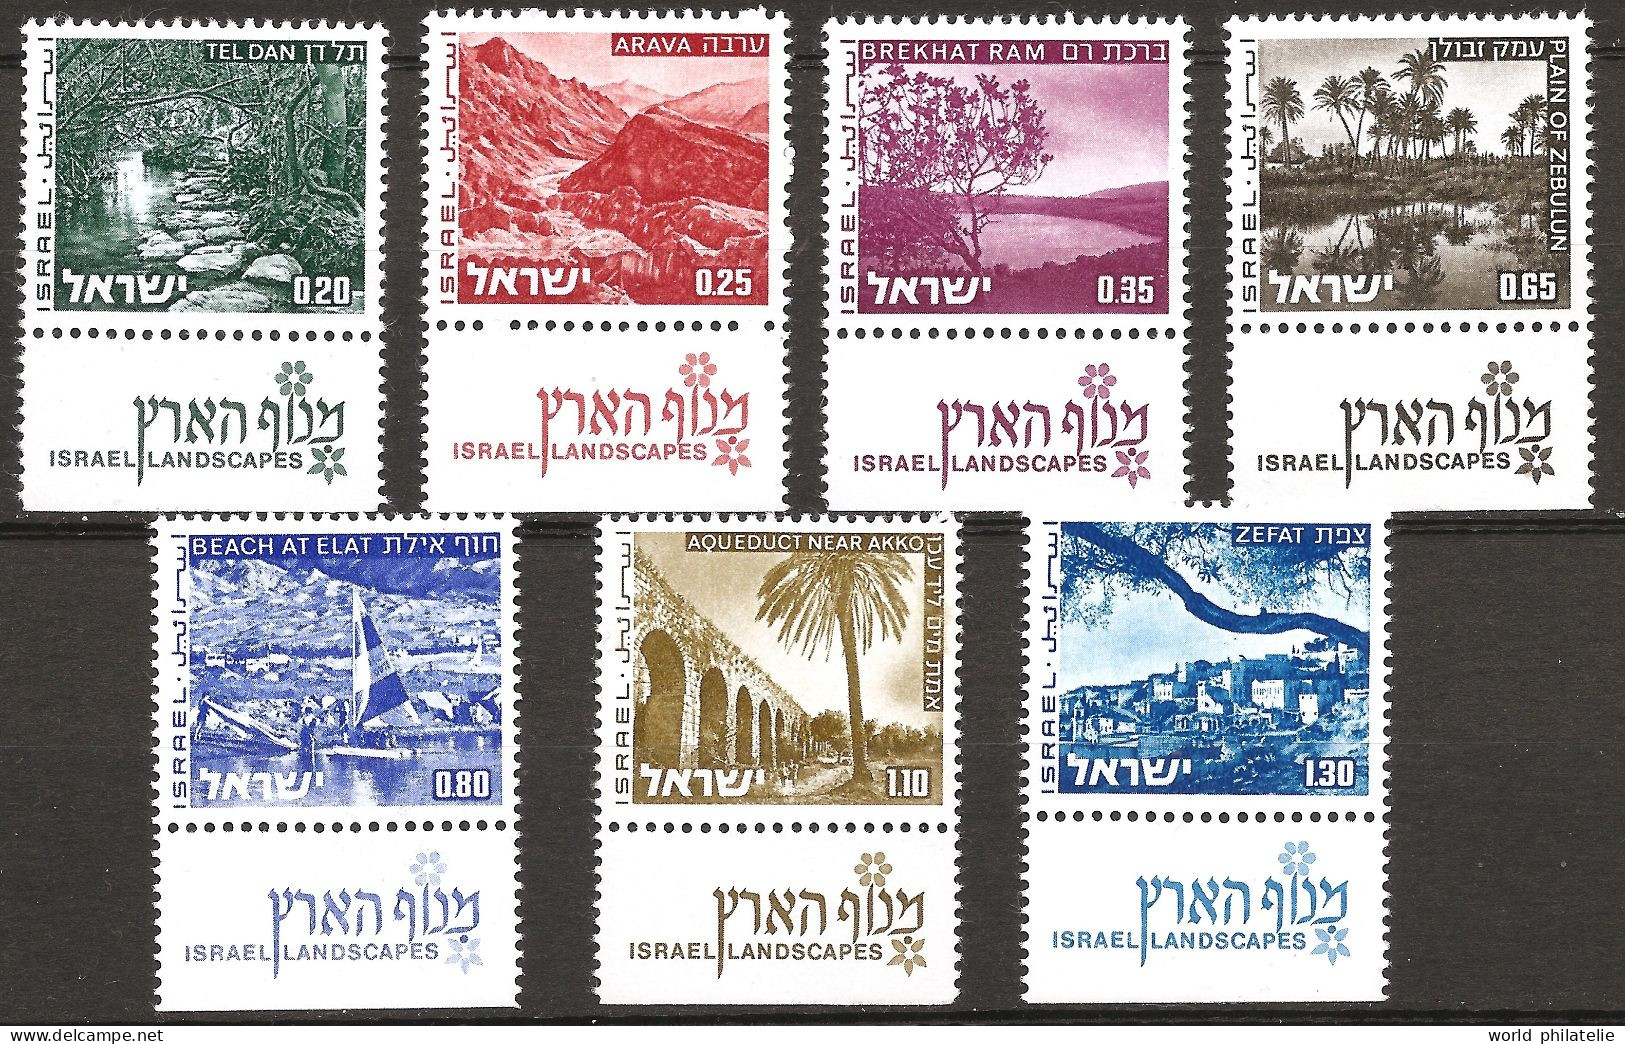 Israël Israel 1973 N° 532 / 8 Avec Tab ** Rivière, Montagne, Arava, Planche à Voile, Aqueduc, Tel-Dan, Plage, Eilat Acre - Unused Stamps (with Tabs)